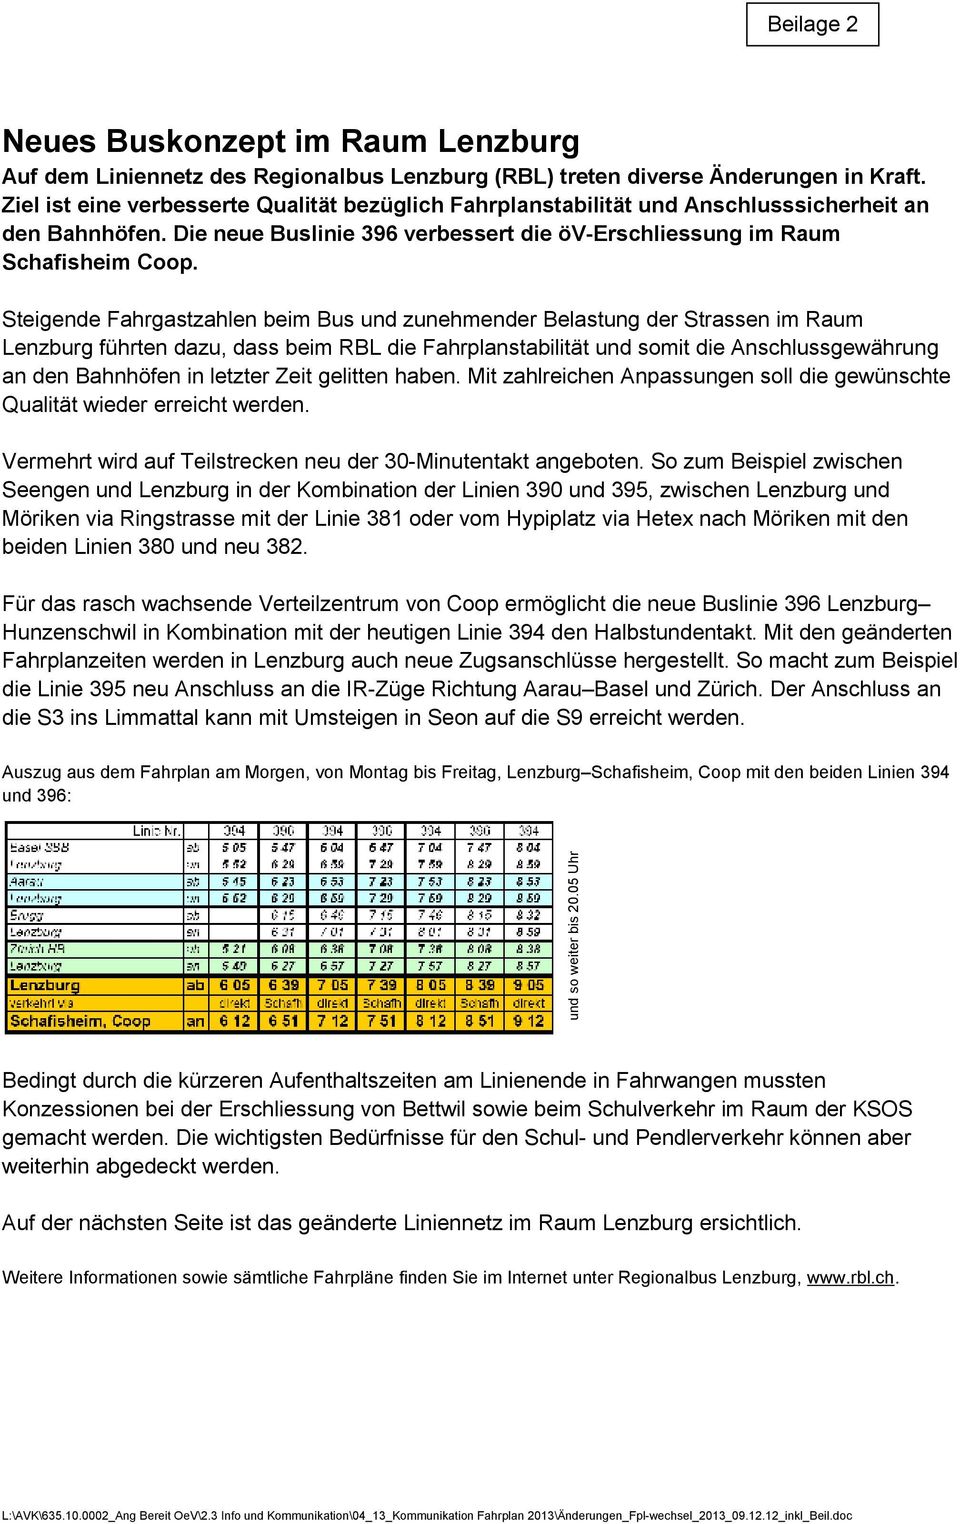 Steigende Fahrgastzahlen beim Bus und zunehmender Belastung der Strassen im Raum Lenzburg führten dazu, dass beim RBL die Fahrplanstabilität und somit die Anschlussgewährung an den Bahnhöfen in